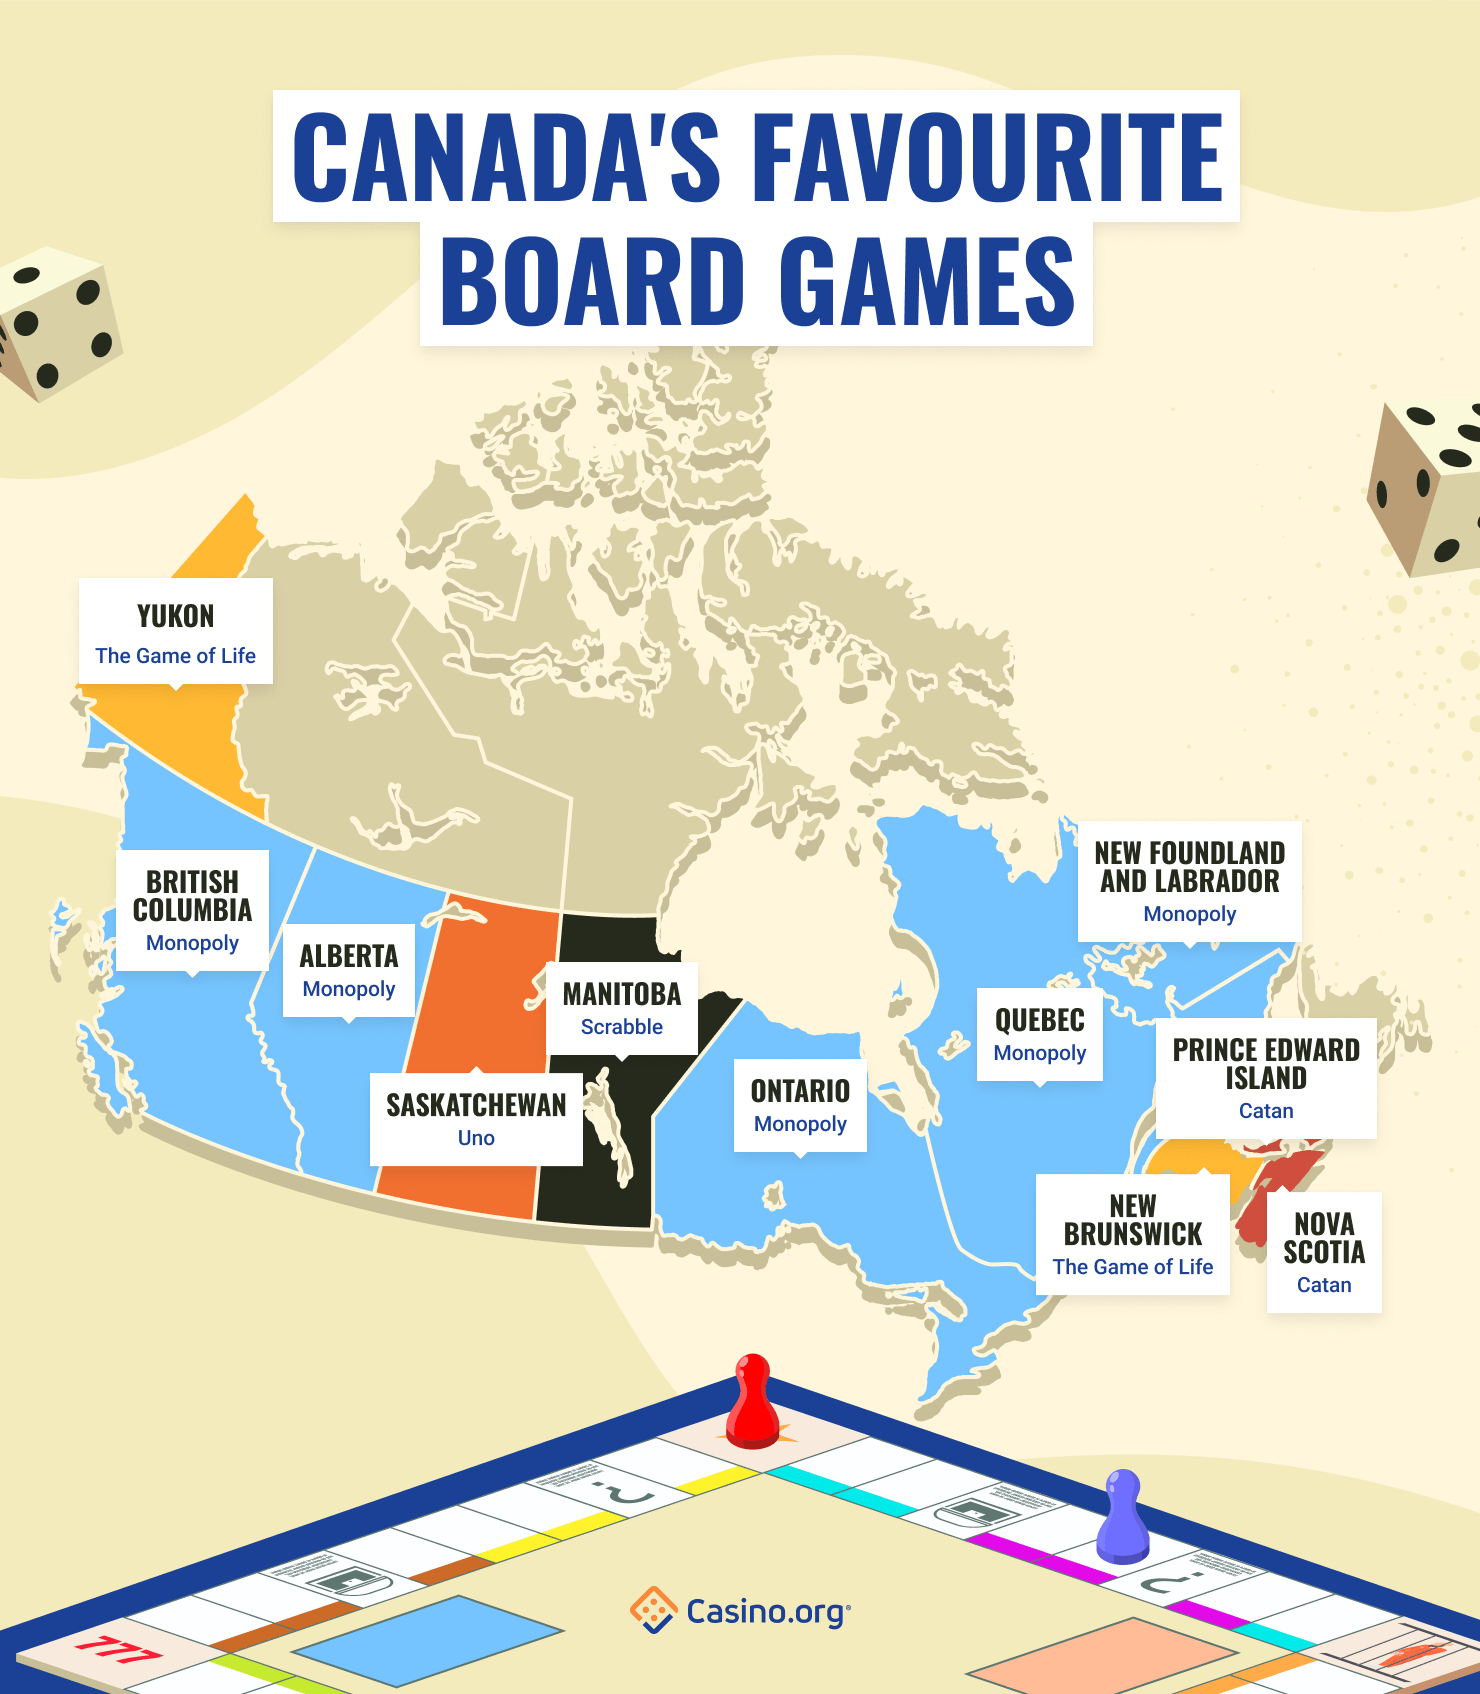 Canada's favourite board games